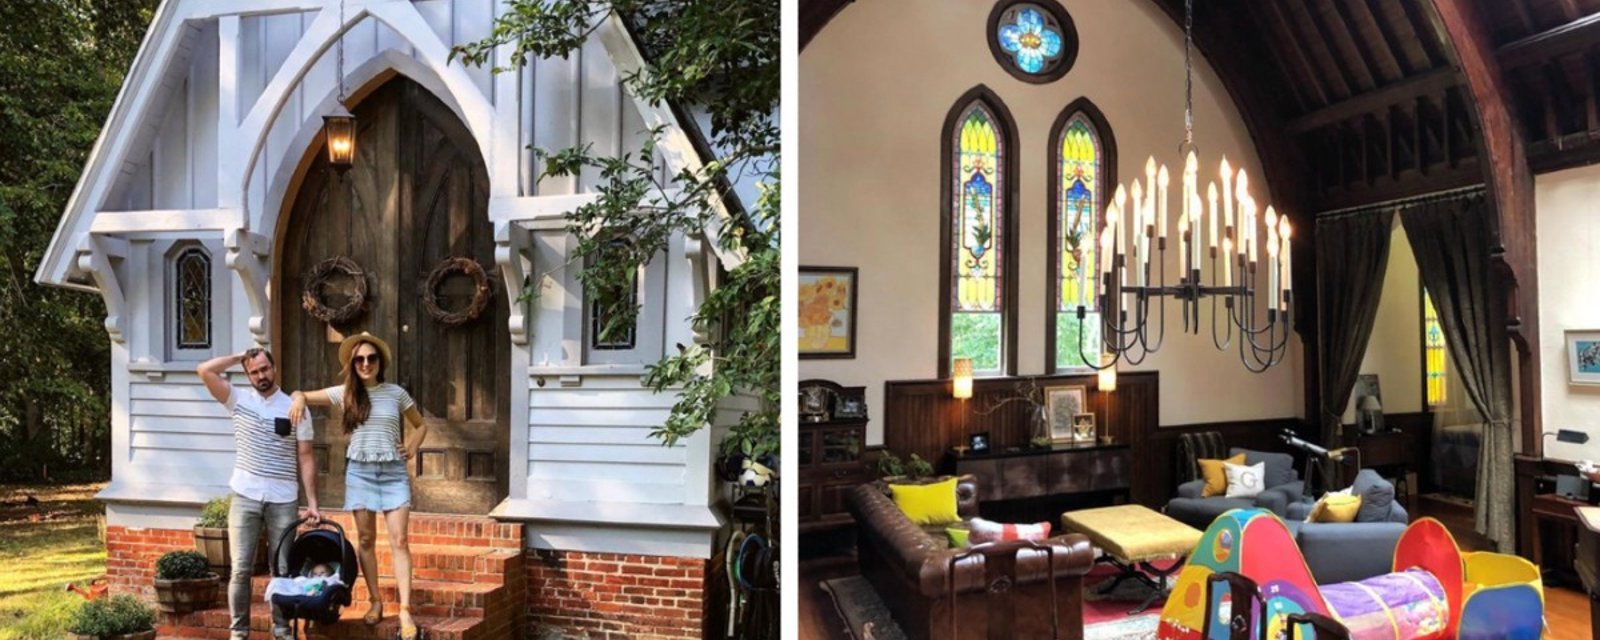 Ils achètent une vieille église pour 320 000 $ et la transforment pour y vivre avec leurs 3 enfants